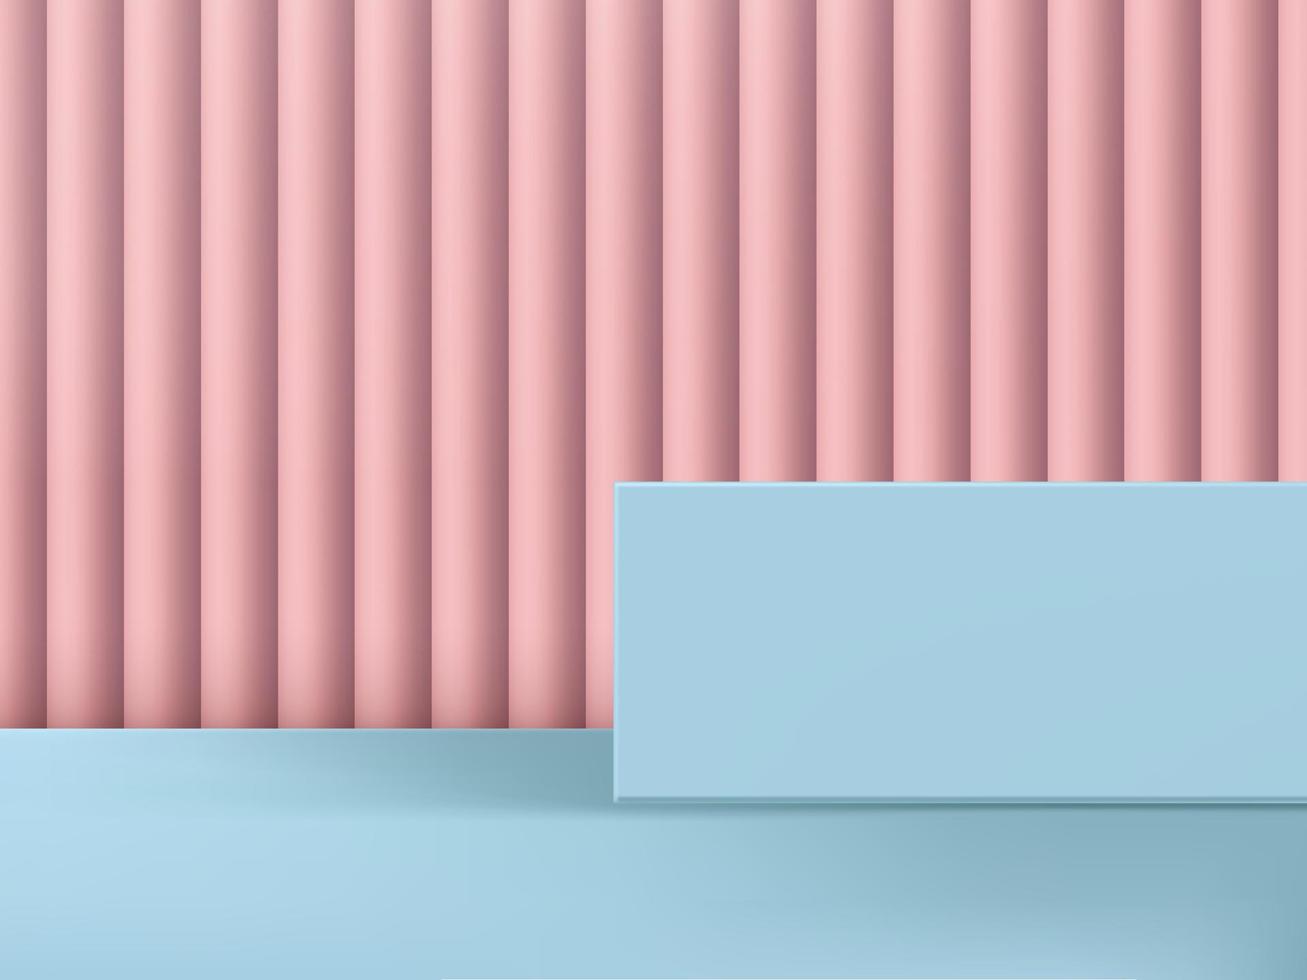 illustration vectorielle 3d plate-forme et arrière-plan de prise de vue en studio rose et bleu clair vecteur